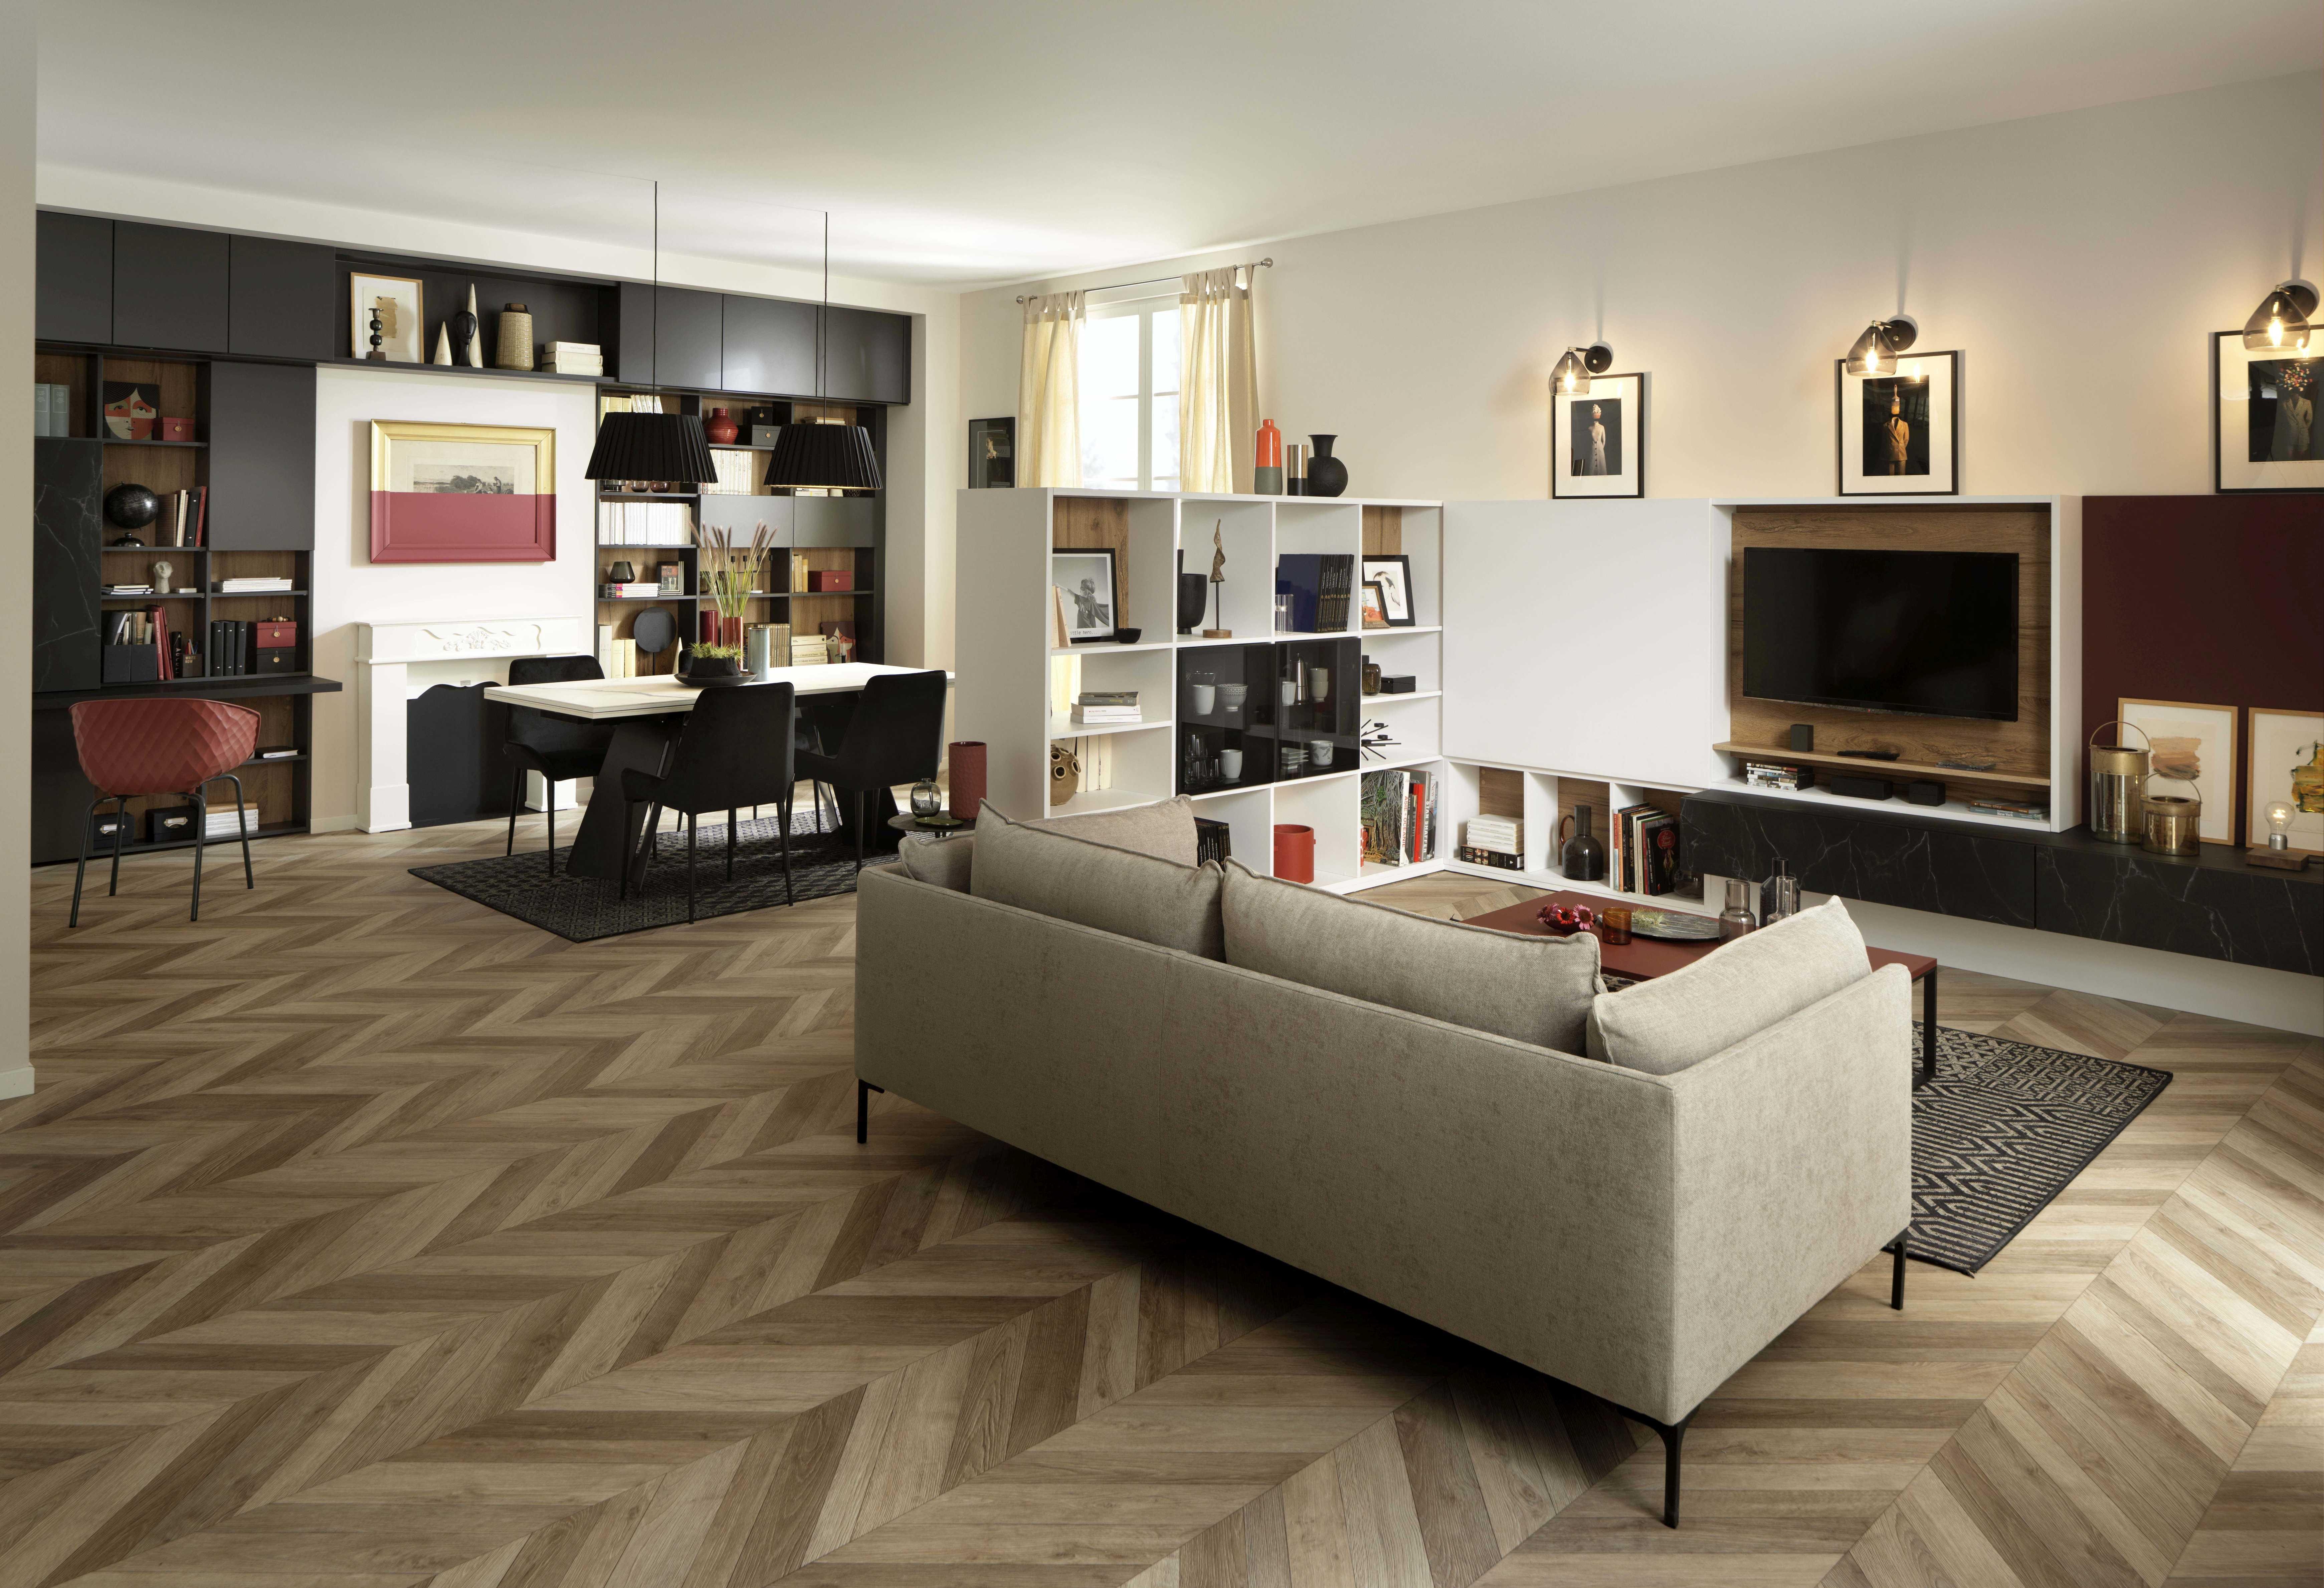 Viele Räume – ein Designer. SCHMIDT bietet ganzheitliche Wohnkonzepte an. www.home-design.schmidt